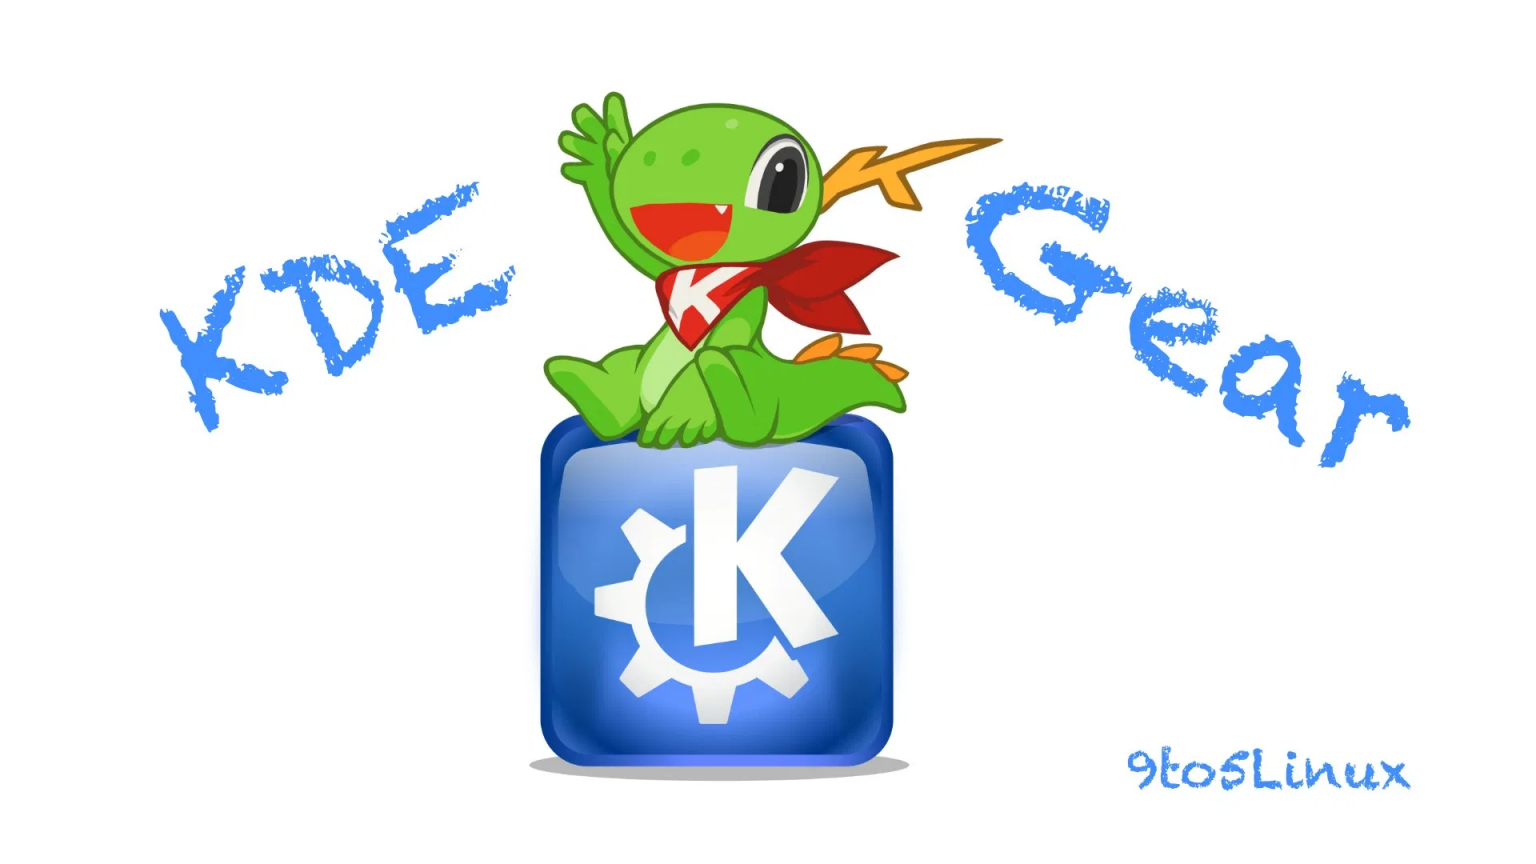 برنامه های اوپن سورس KDE با نام تجاری KDE Gear منتشر میشوند